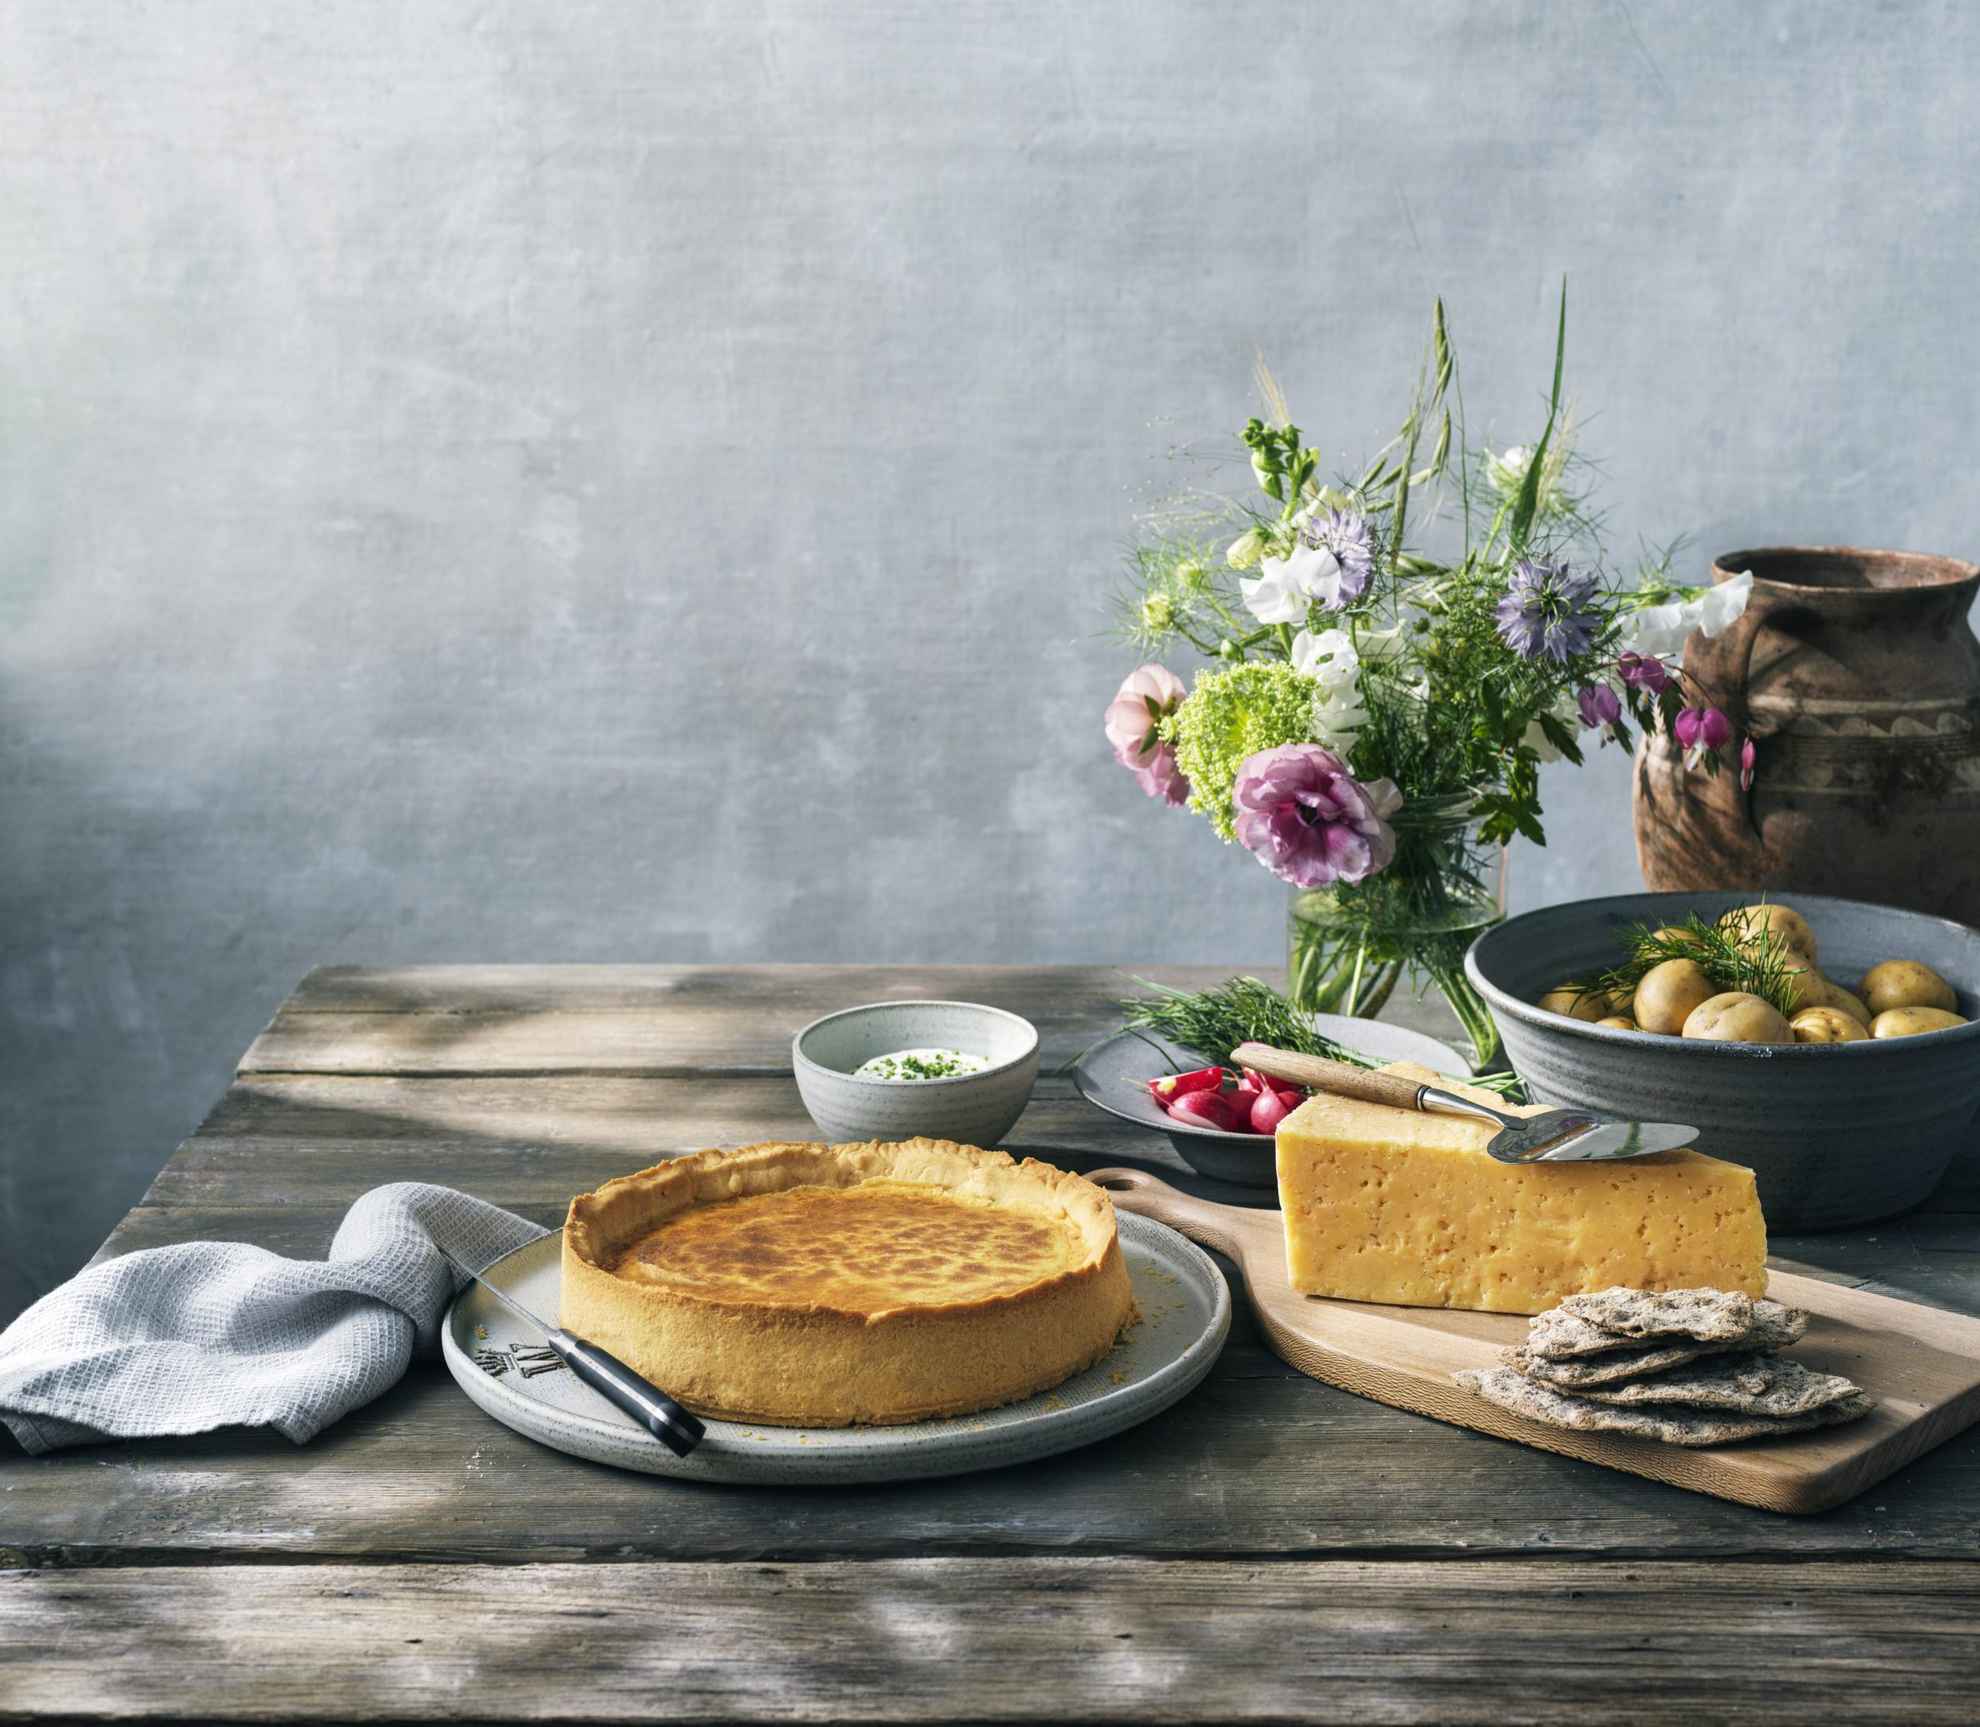 Ein Holztisch mit Västerbottenpaj-Quiche, Västerbotten-Käse, einer Schüssel Kartoffeln und einer Blumenvase.